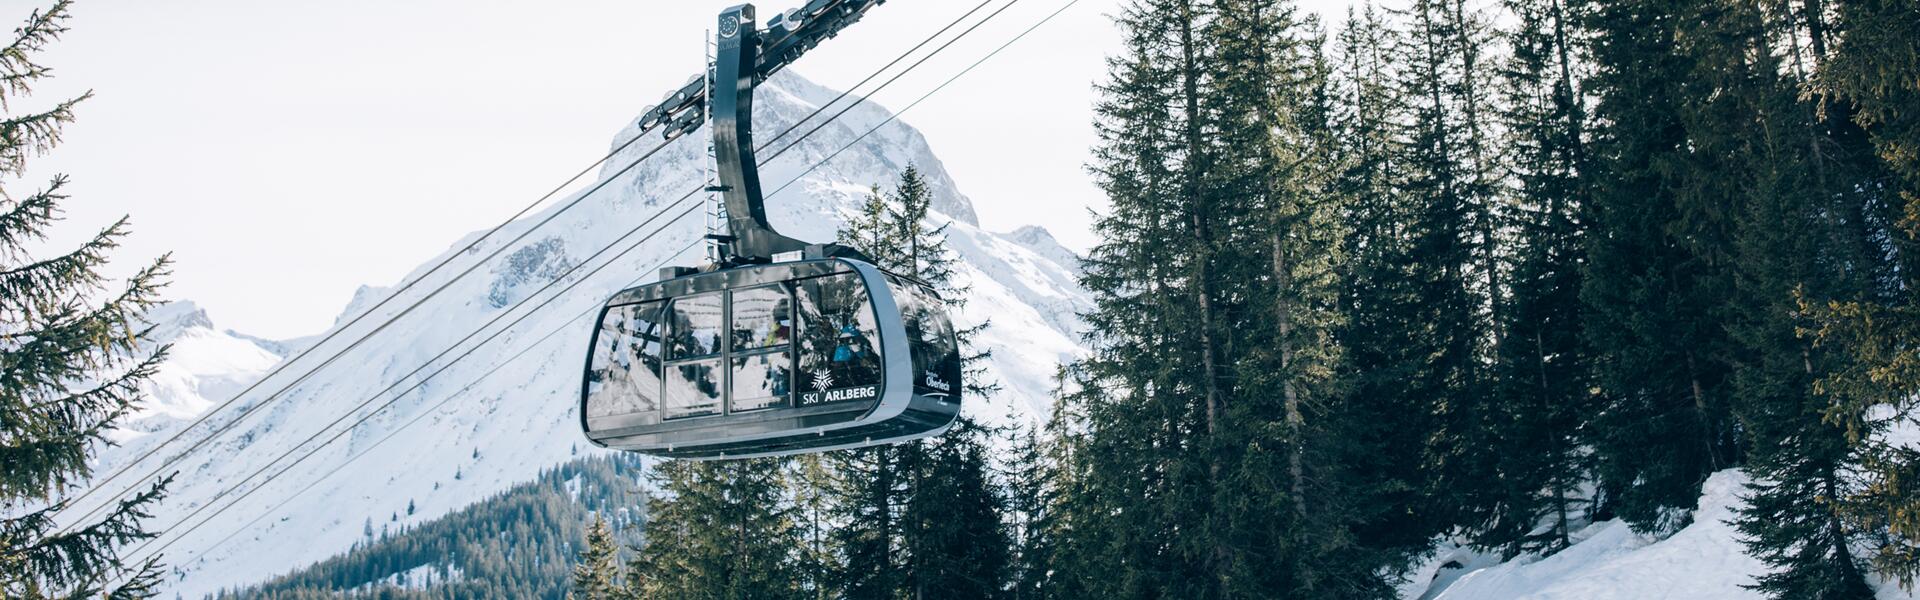 gondola ski resort Zürs